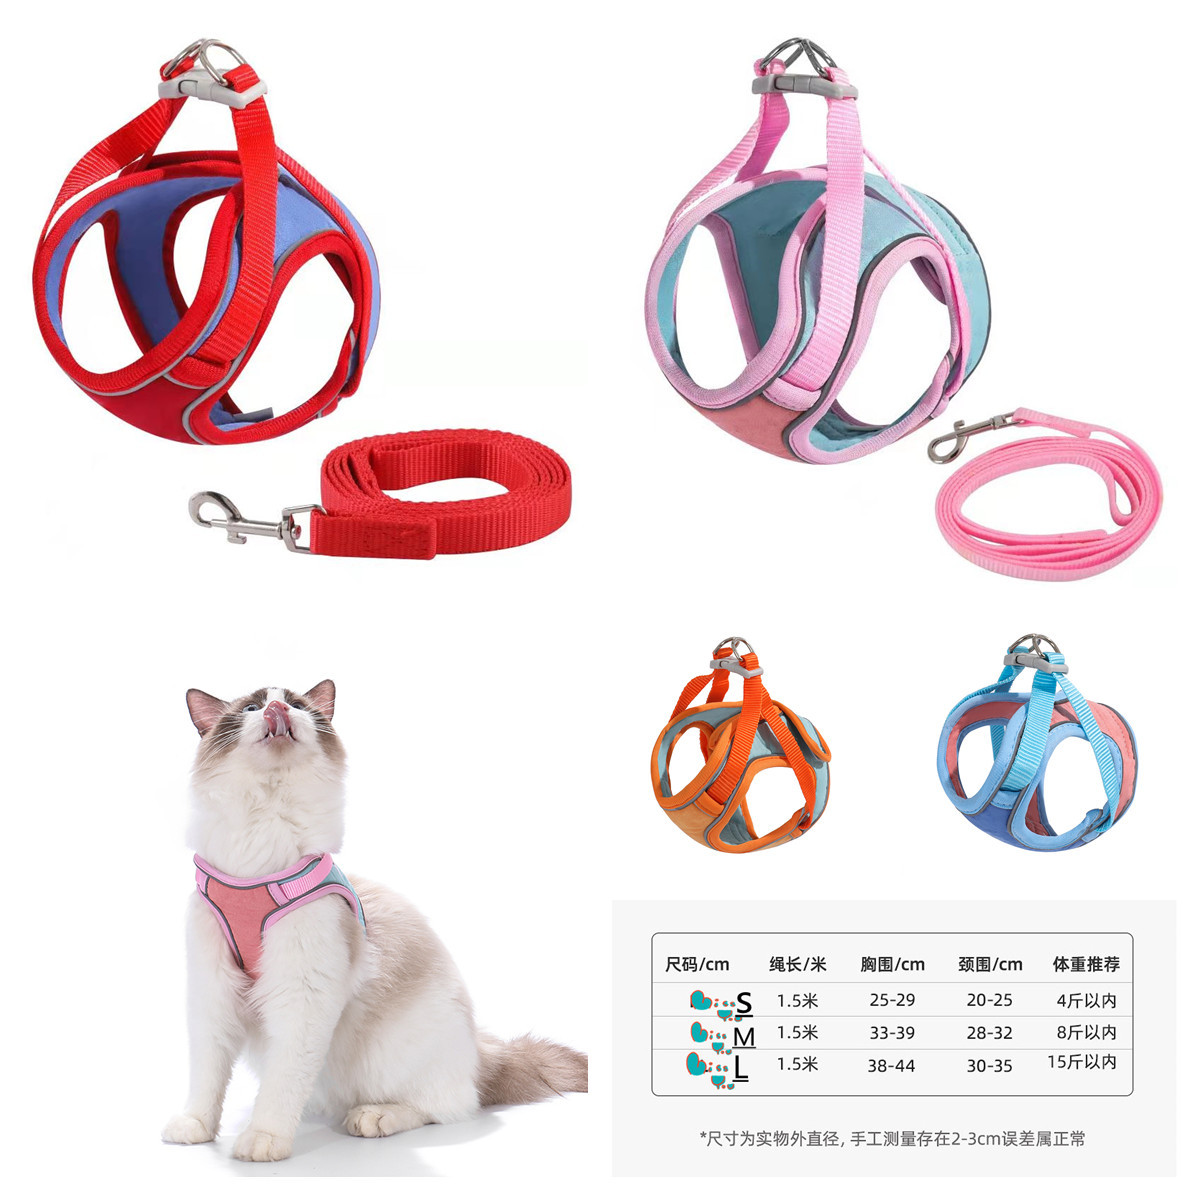 Factory source Artículos de fiesta - Breathable Pet Chest Harness Reflective Vest Dog Leash Rope Wholesale – Sellers Union